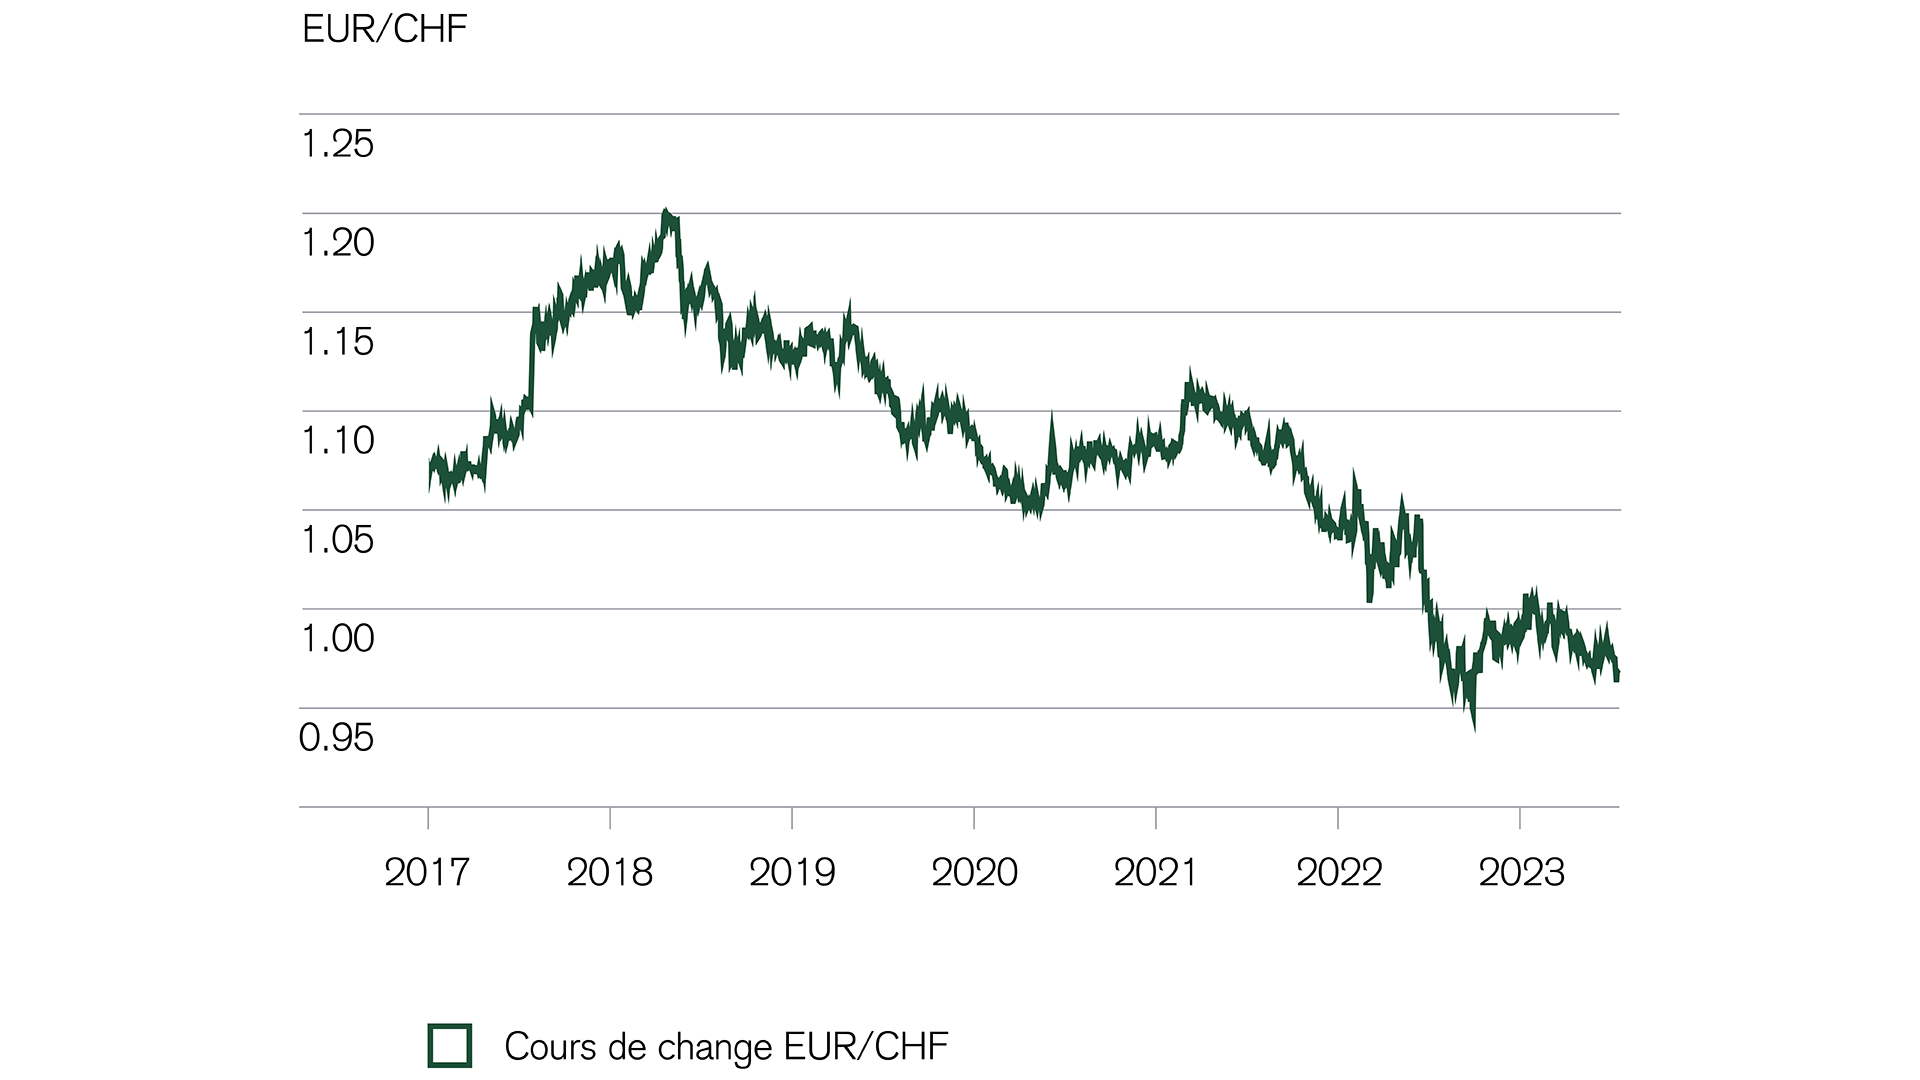 Monnaies: le franc reste plus cher que l’euro